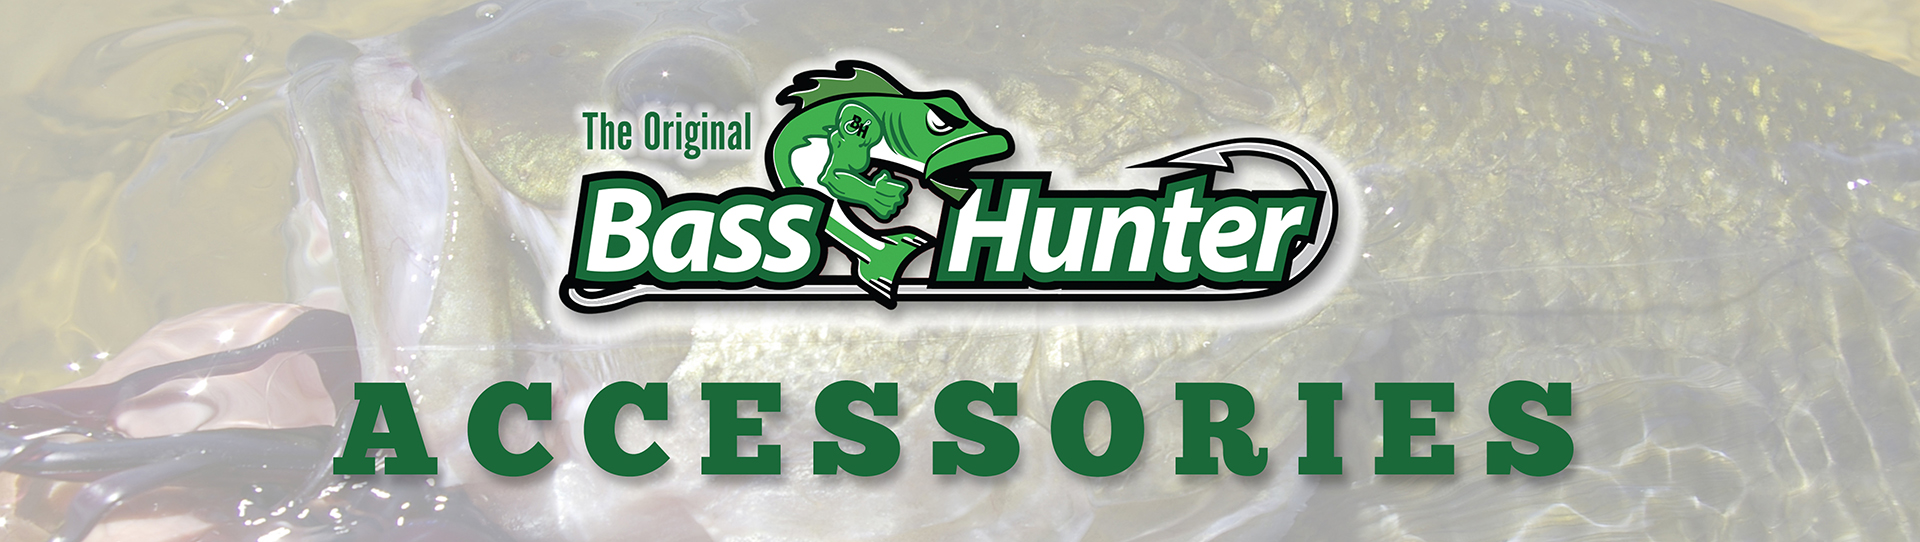 Bass Hunter Accessories